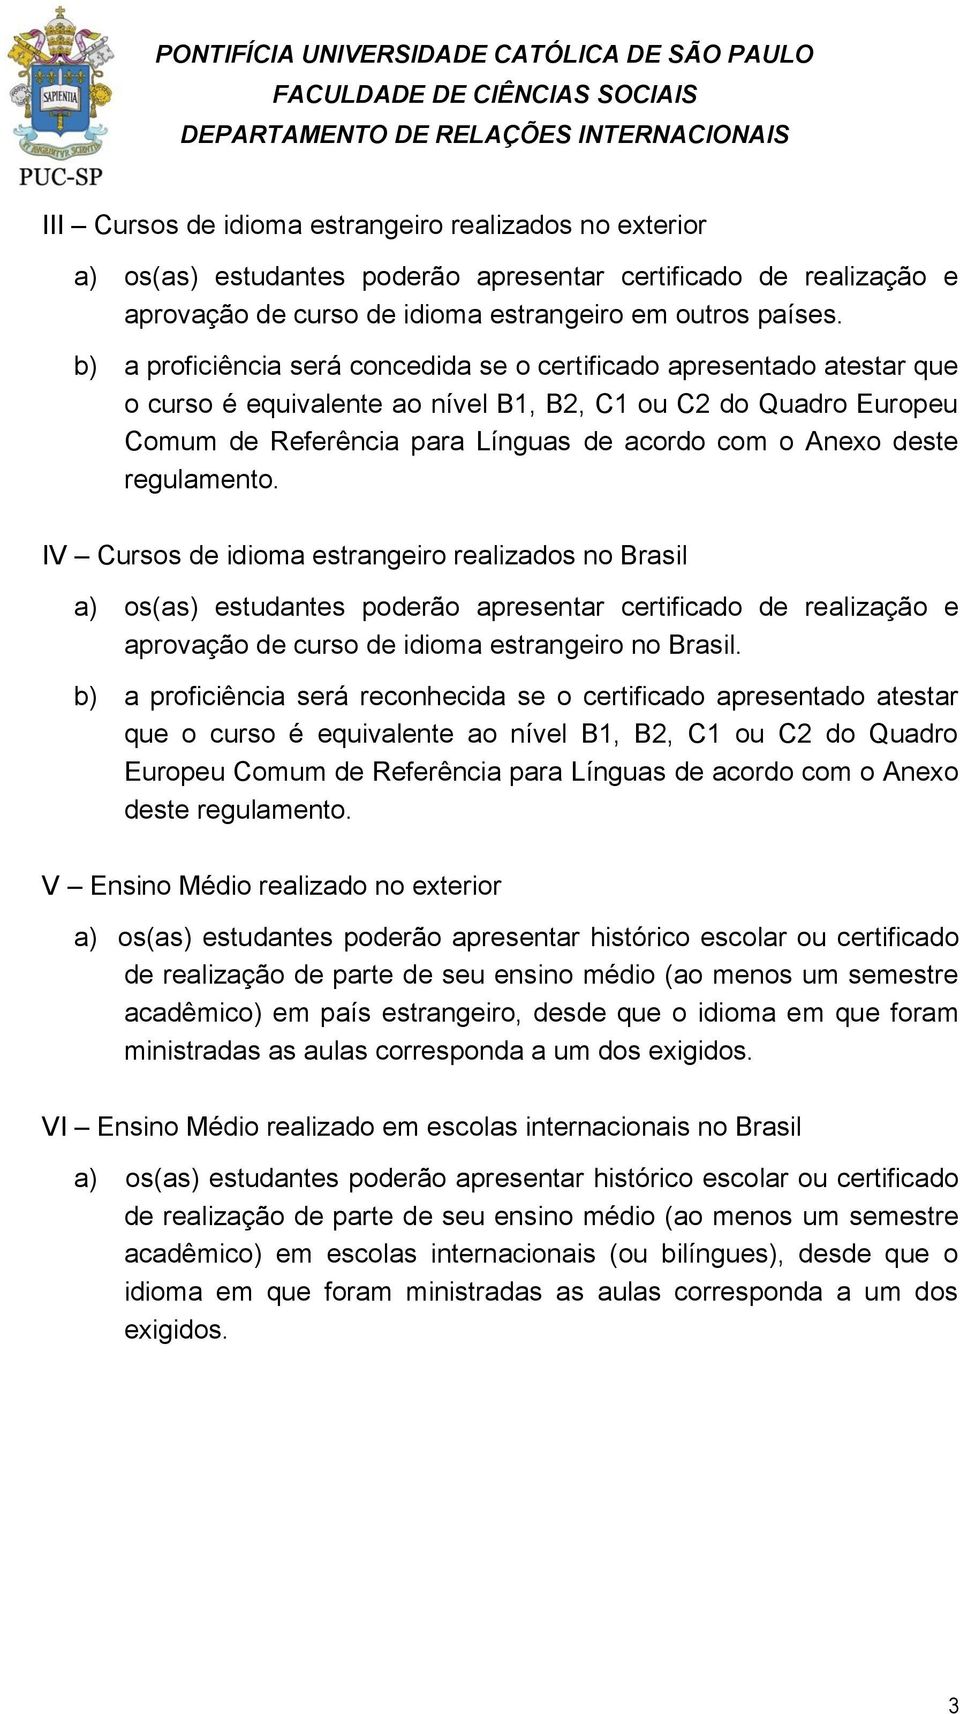 deste regulamento. IV Cursos de idioma estrangeiro realizados no Brasil a) os(as) estudantes poderão apresentar certificado de realização e aprovação de curso de idioma estrangeiro no Brasil.